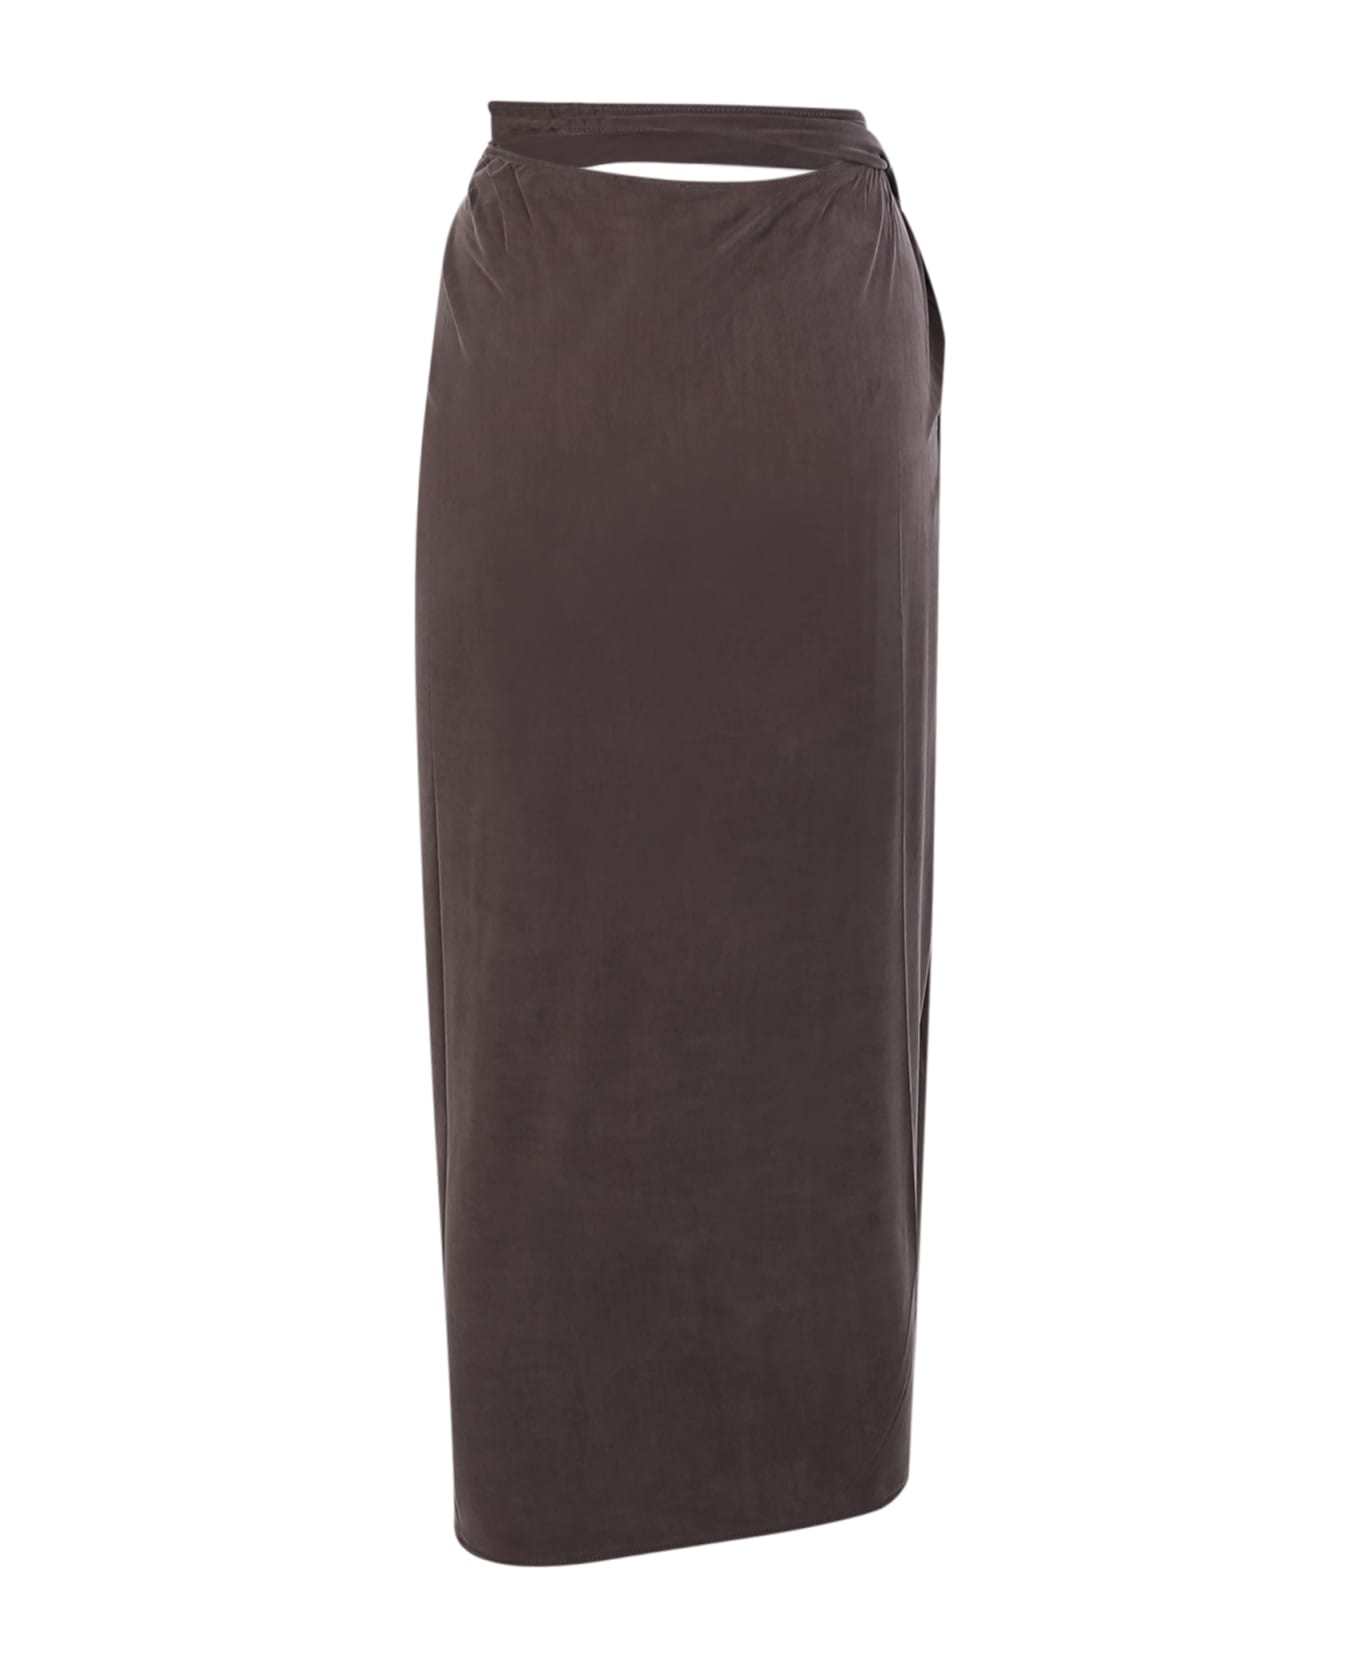 Jacquemus Skirt - Brown スカート